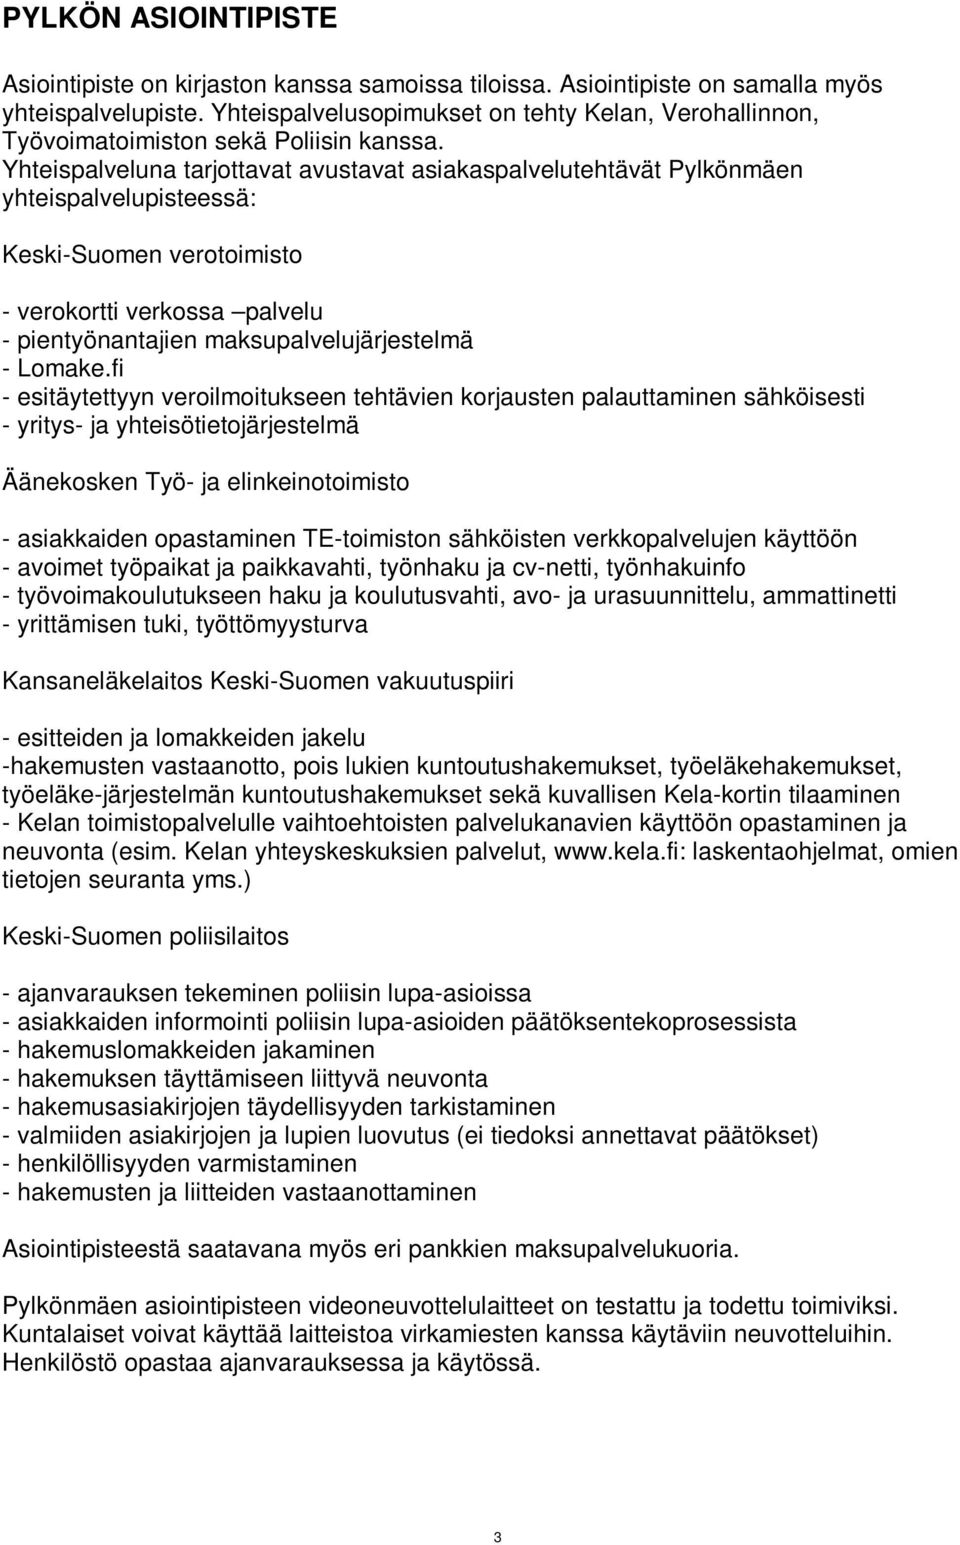 Yhteispalveluna tarjottavat avustavat asiakaspalvelutehtävät Pylkönmäen yhteispalvelupisteessä: Keski-Suomen verotoimisto - verokortti verkossa palvelu - pientyönantajien maksupalvelujärjestelmä -